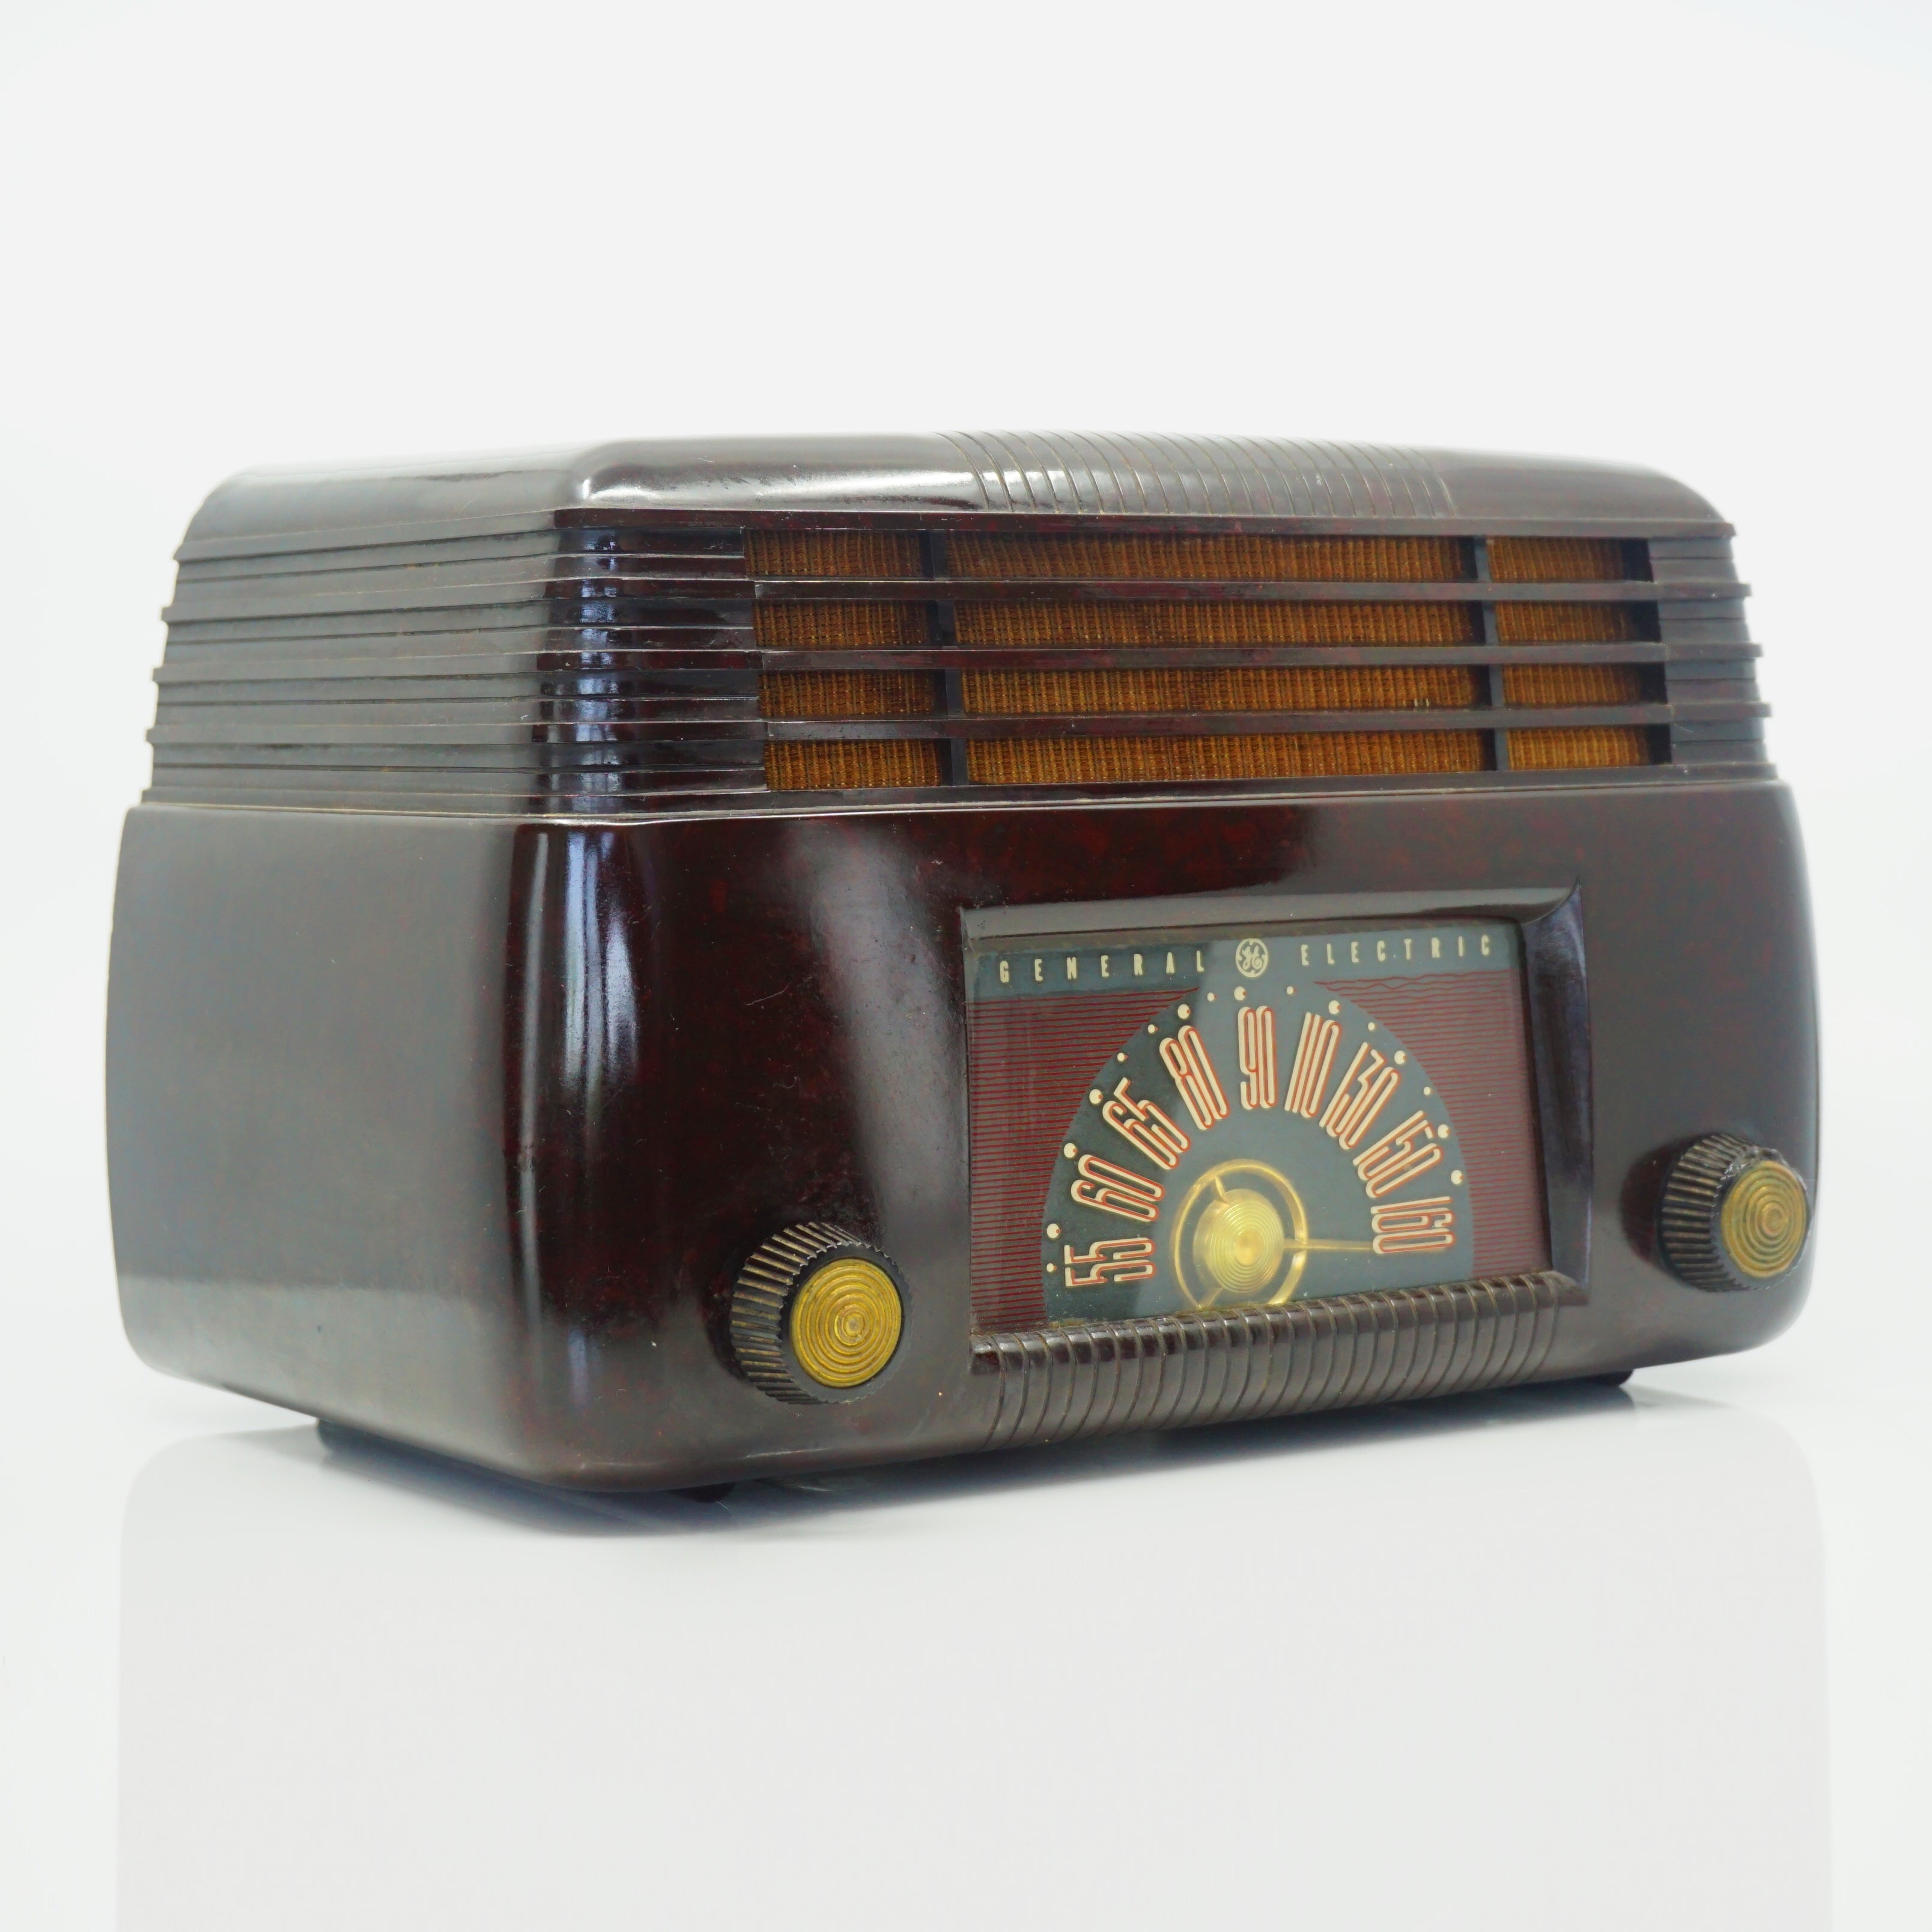 Mid-Century 1946 General Electric "Dashboard" Radio Model 100 Brown Bakelite